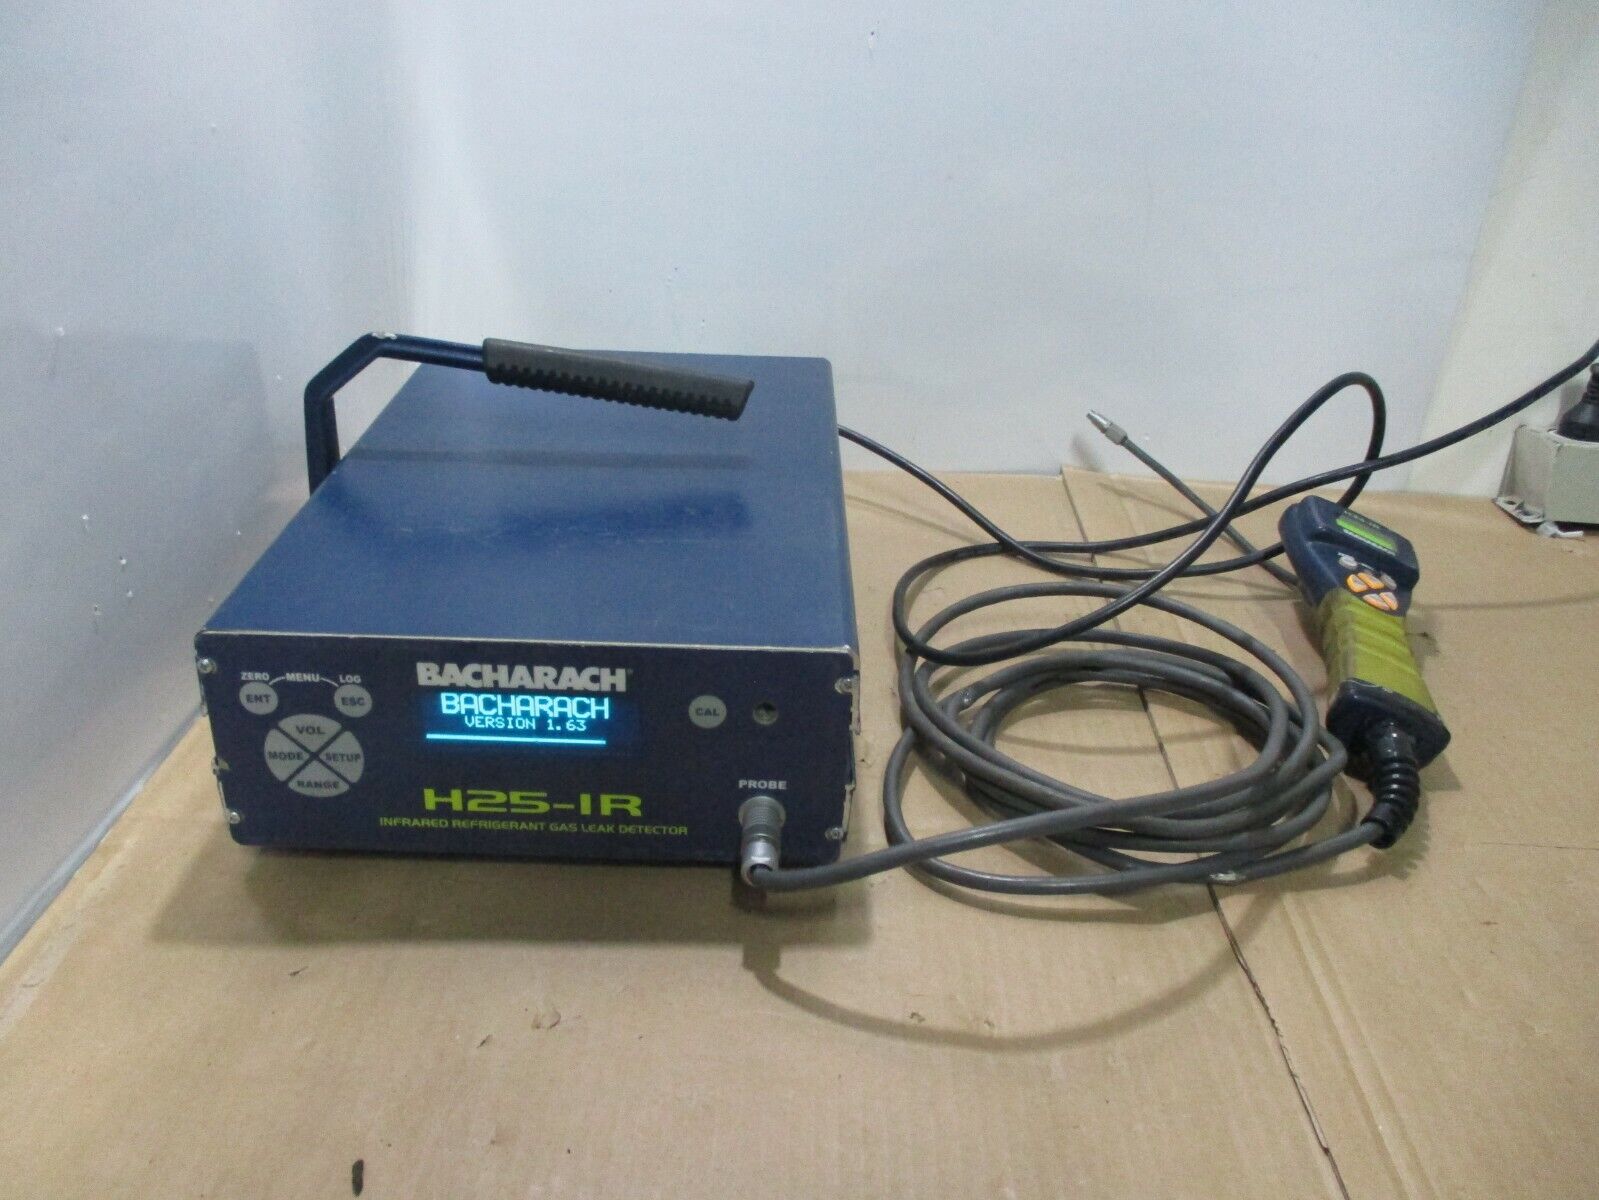 Bacharach 3015-4348 H25-IR Industrial Refrigerant Leak Detector w/ PROBE 19-7114